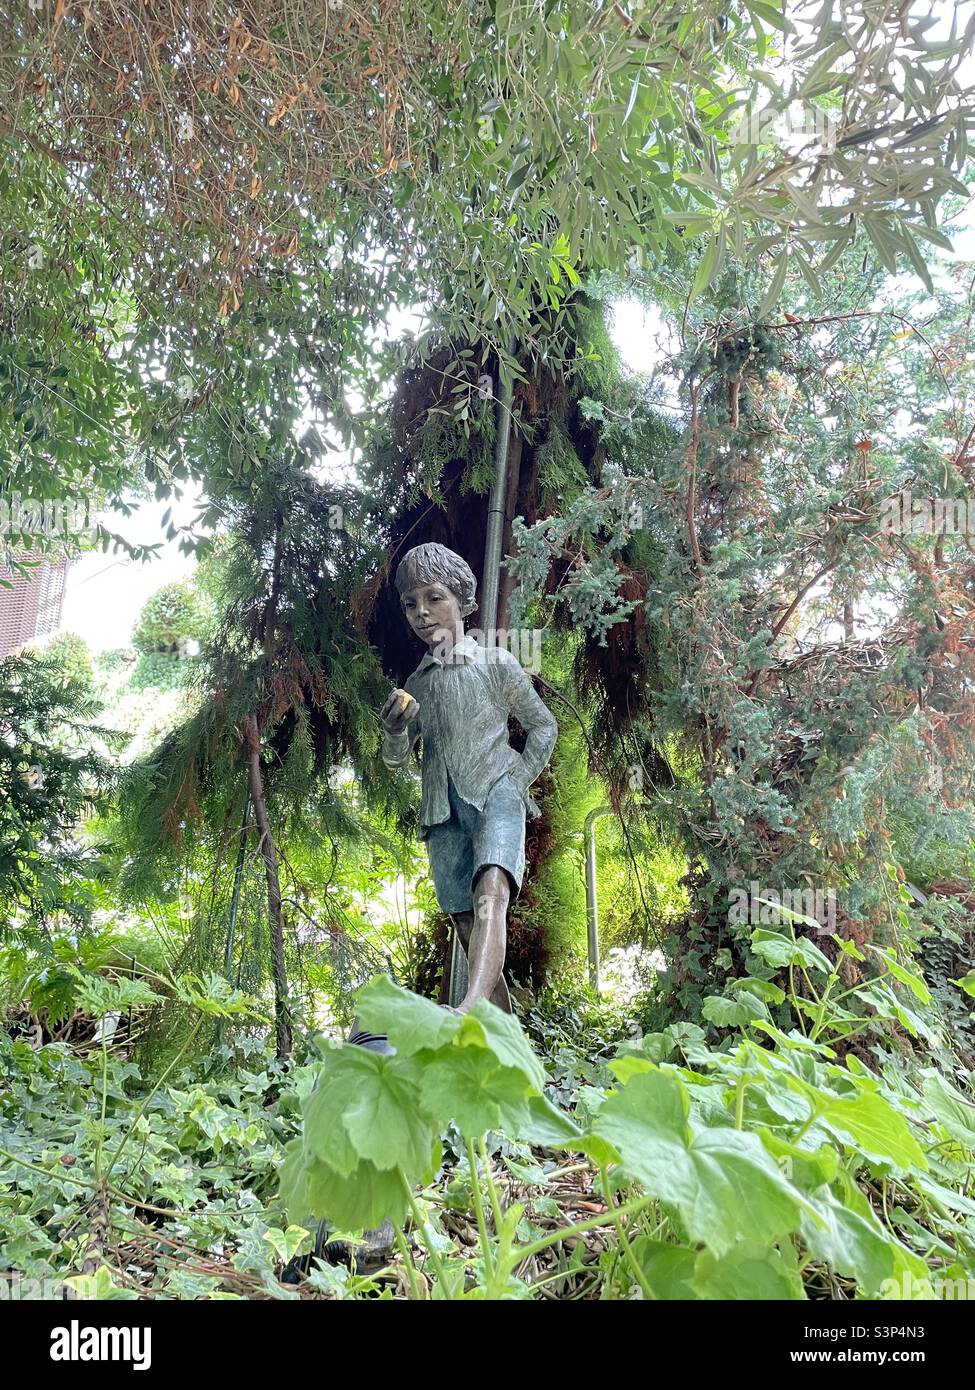 Boy in a garden Stock Photo